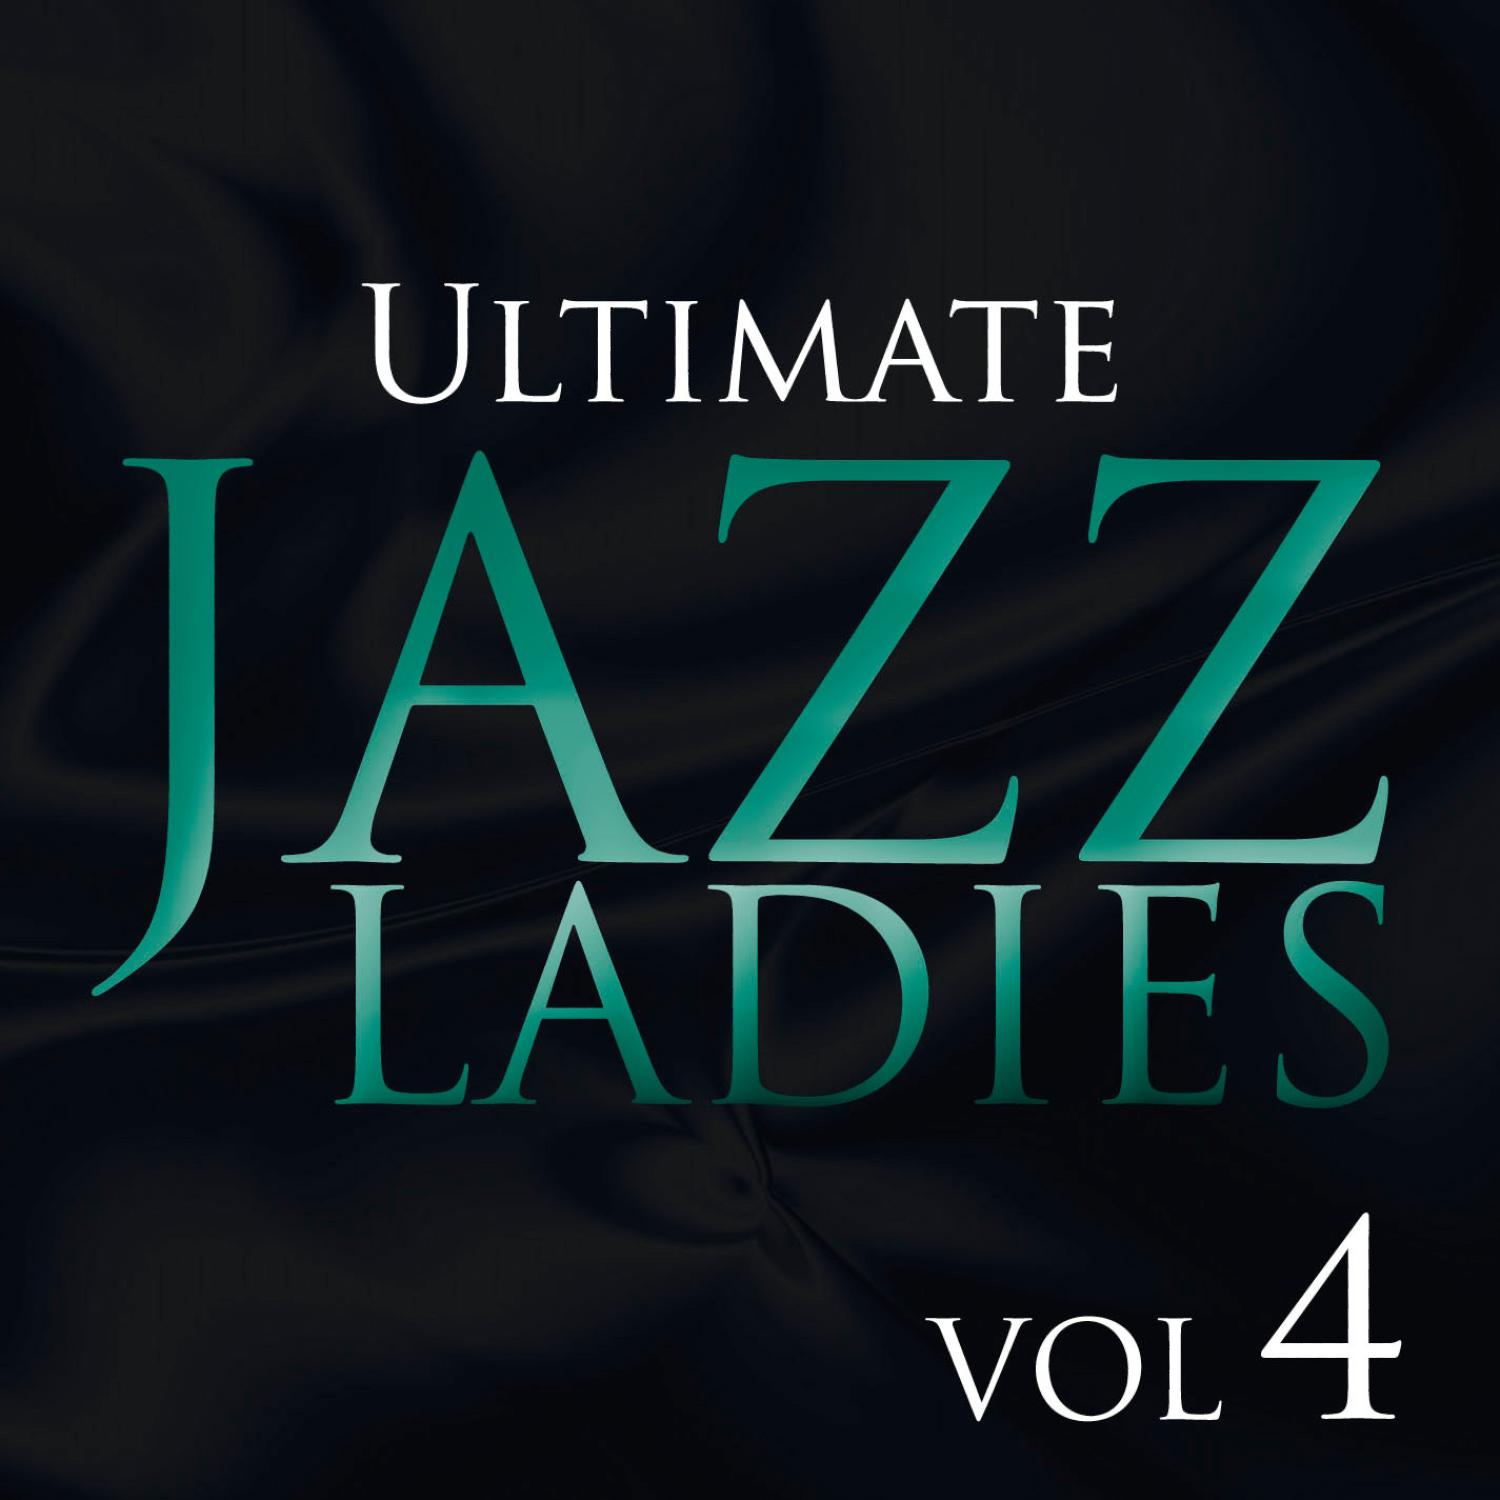 Ultimate Jazz Ladies, Vol. 4